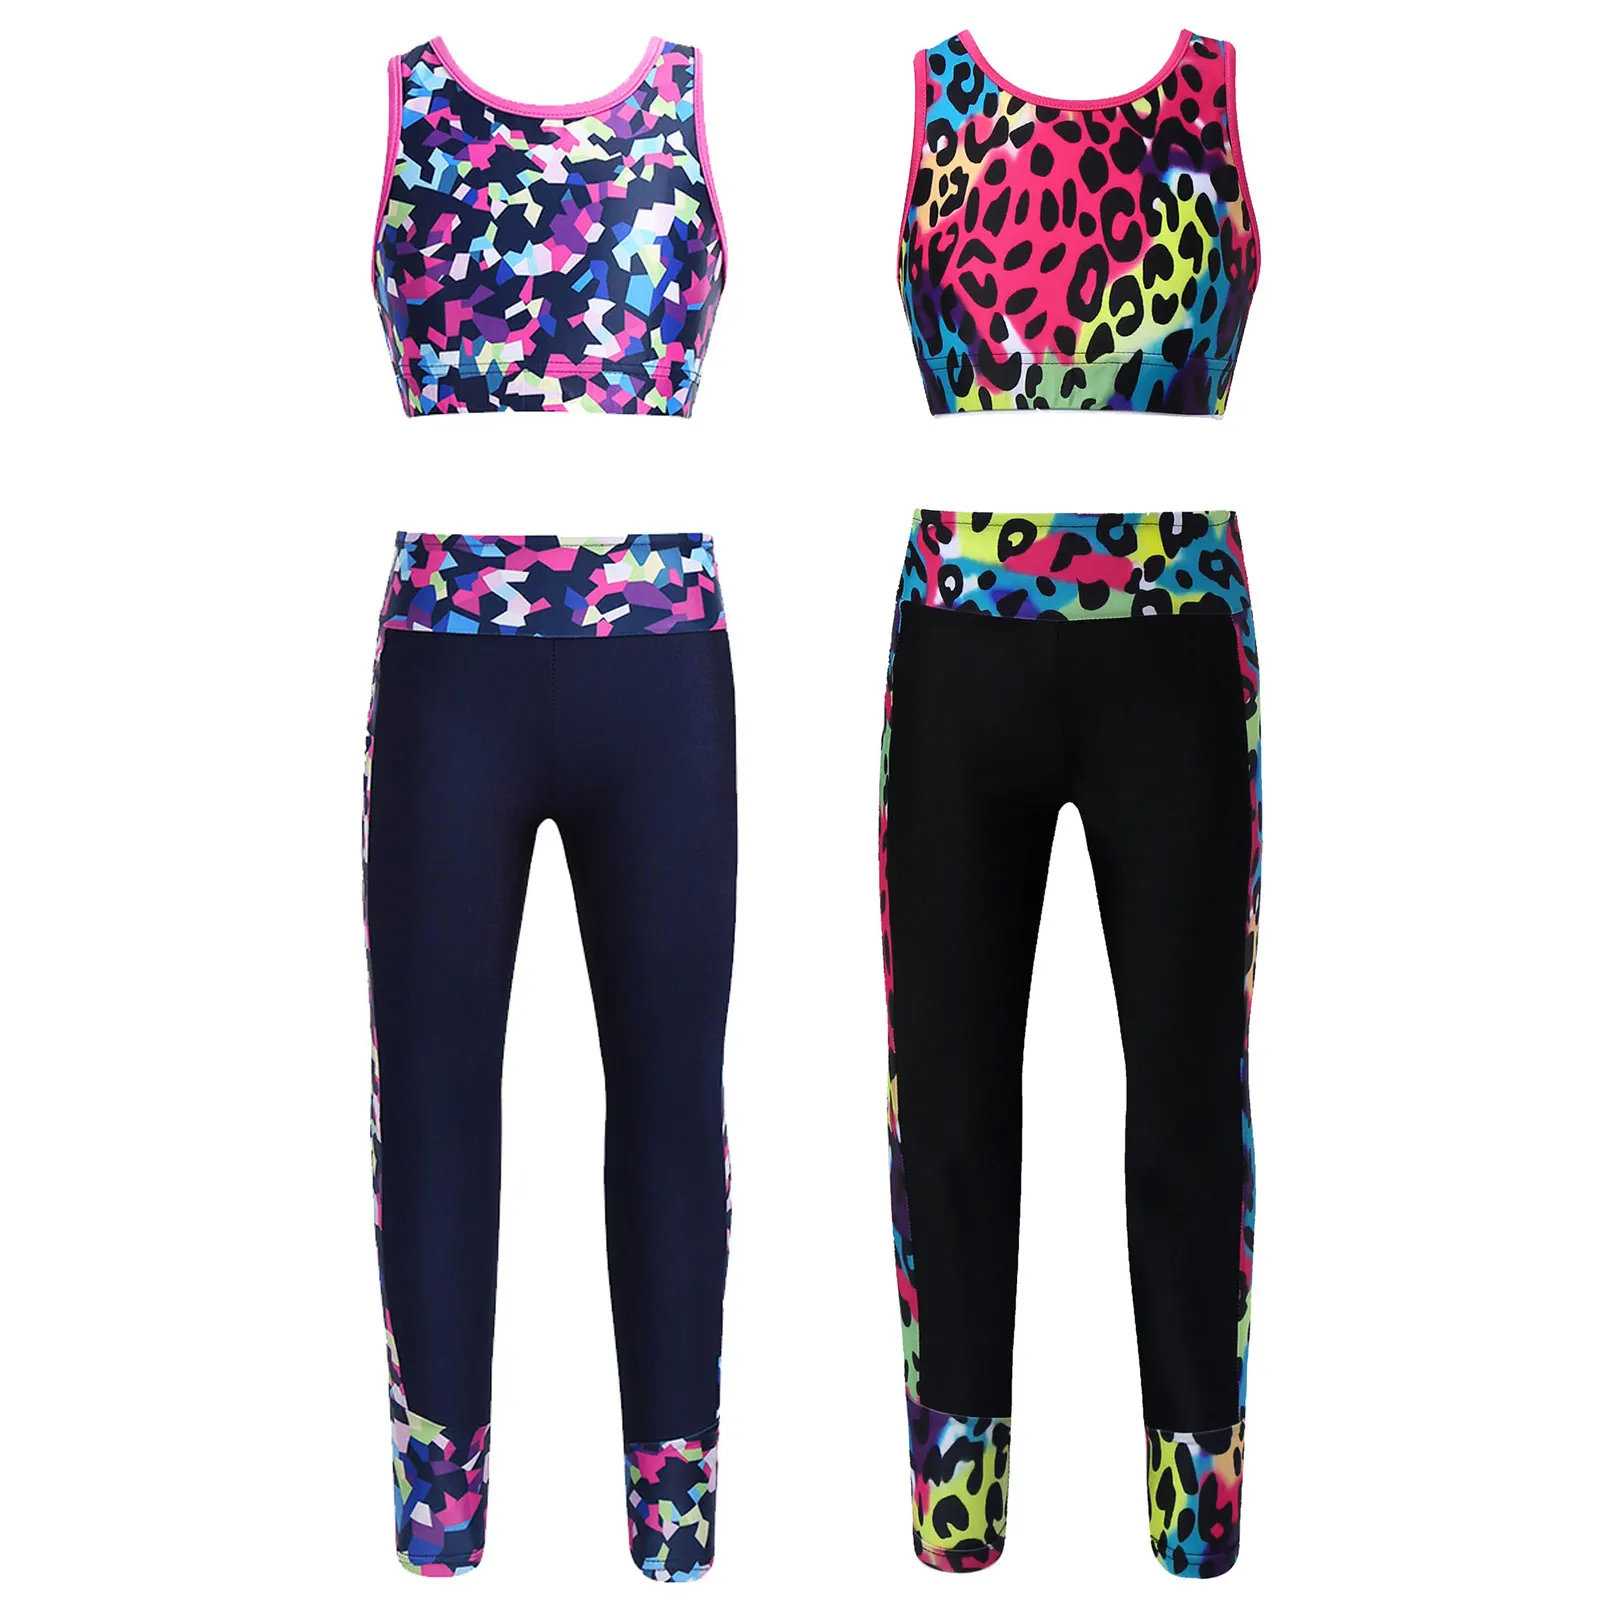 

Kids Girls Clothes Digital Print Sleeveless Mesh Racer Back Tank Crop Top Legging Teen Gymnastics Dancewear Workout Sport Outfit